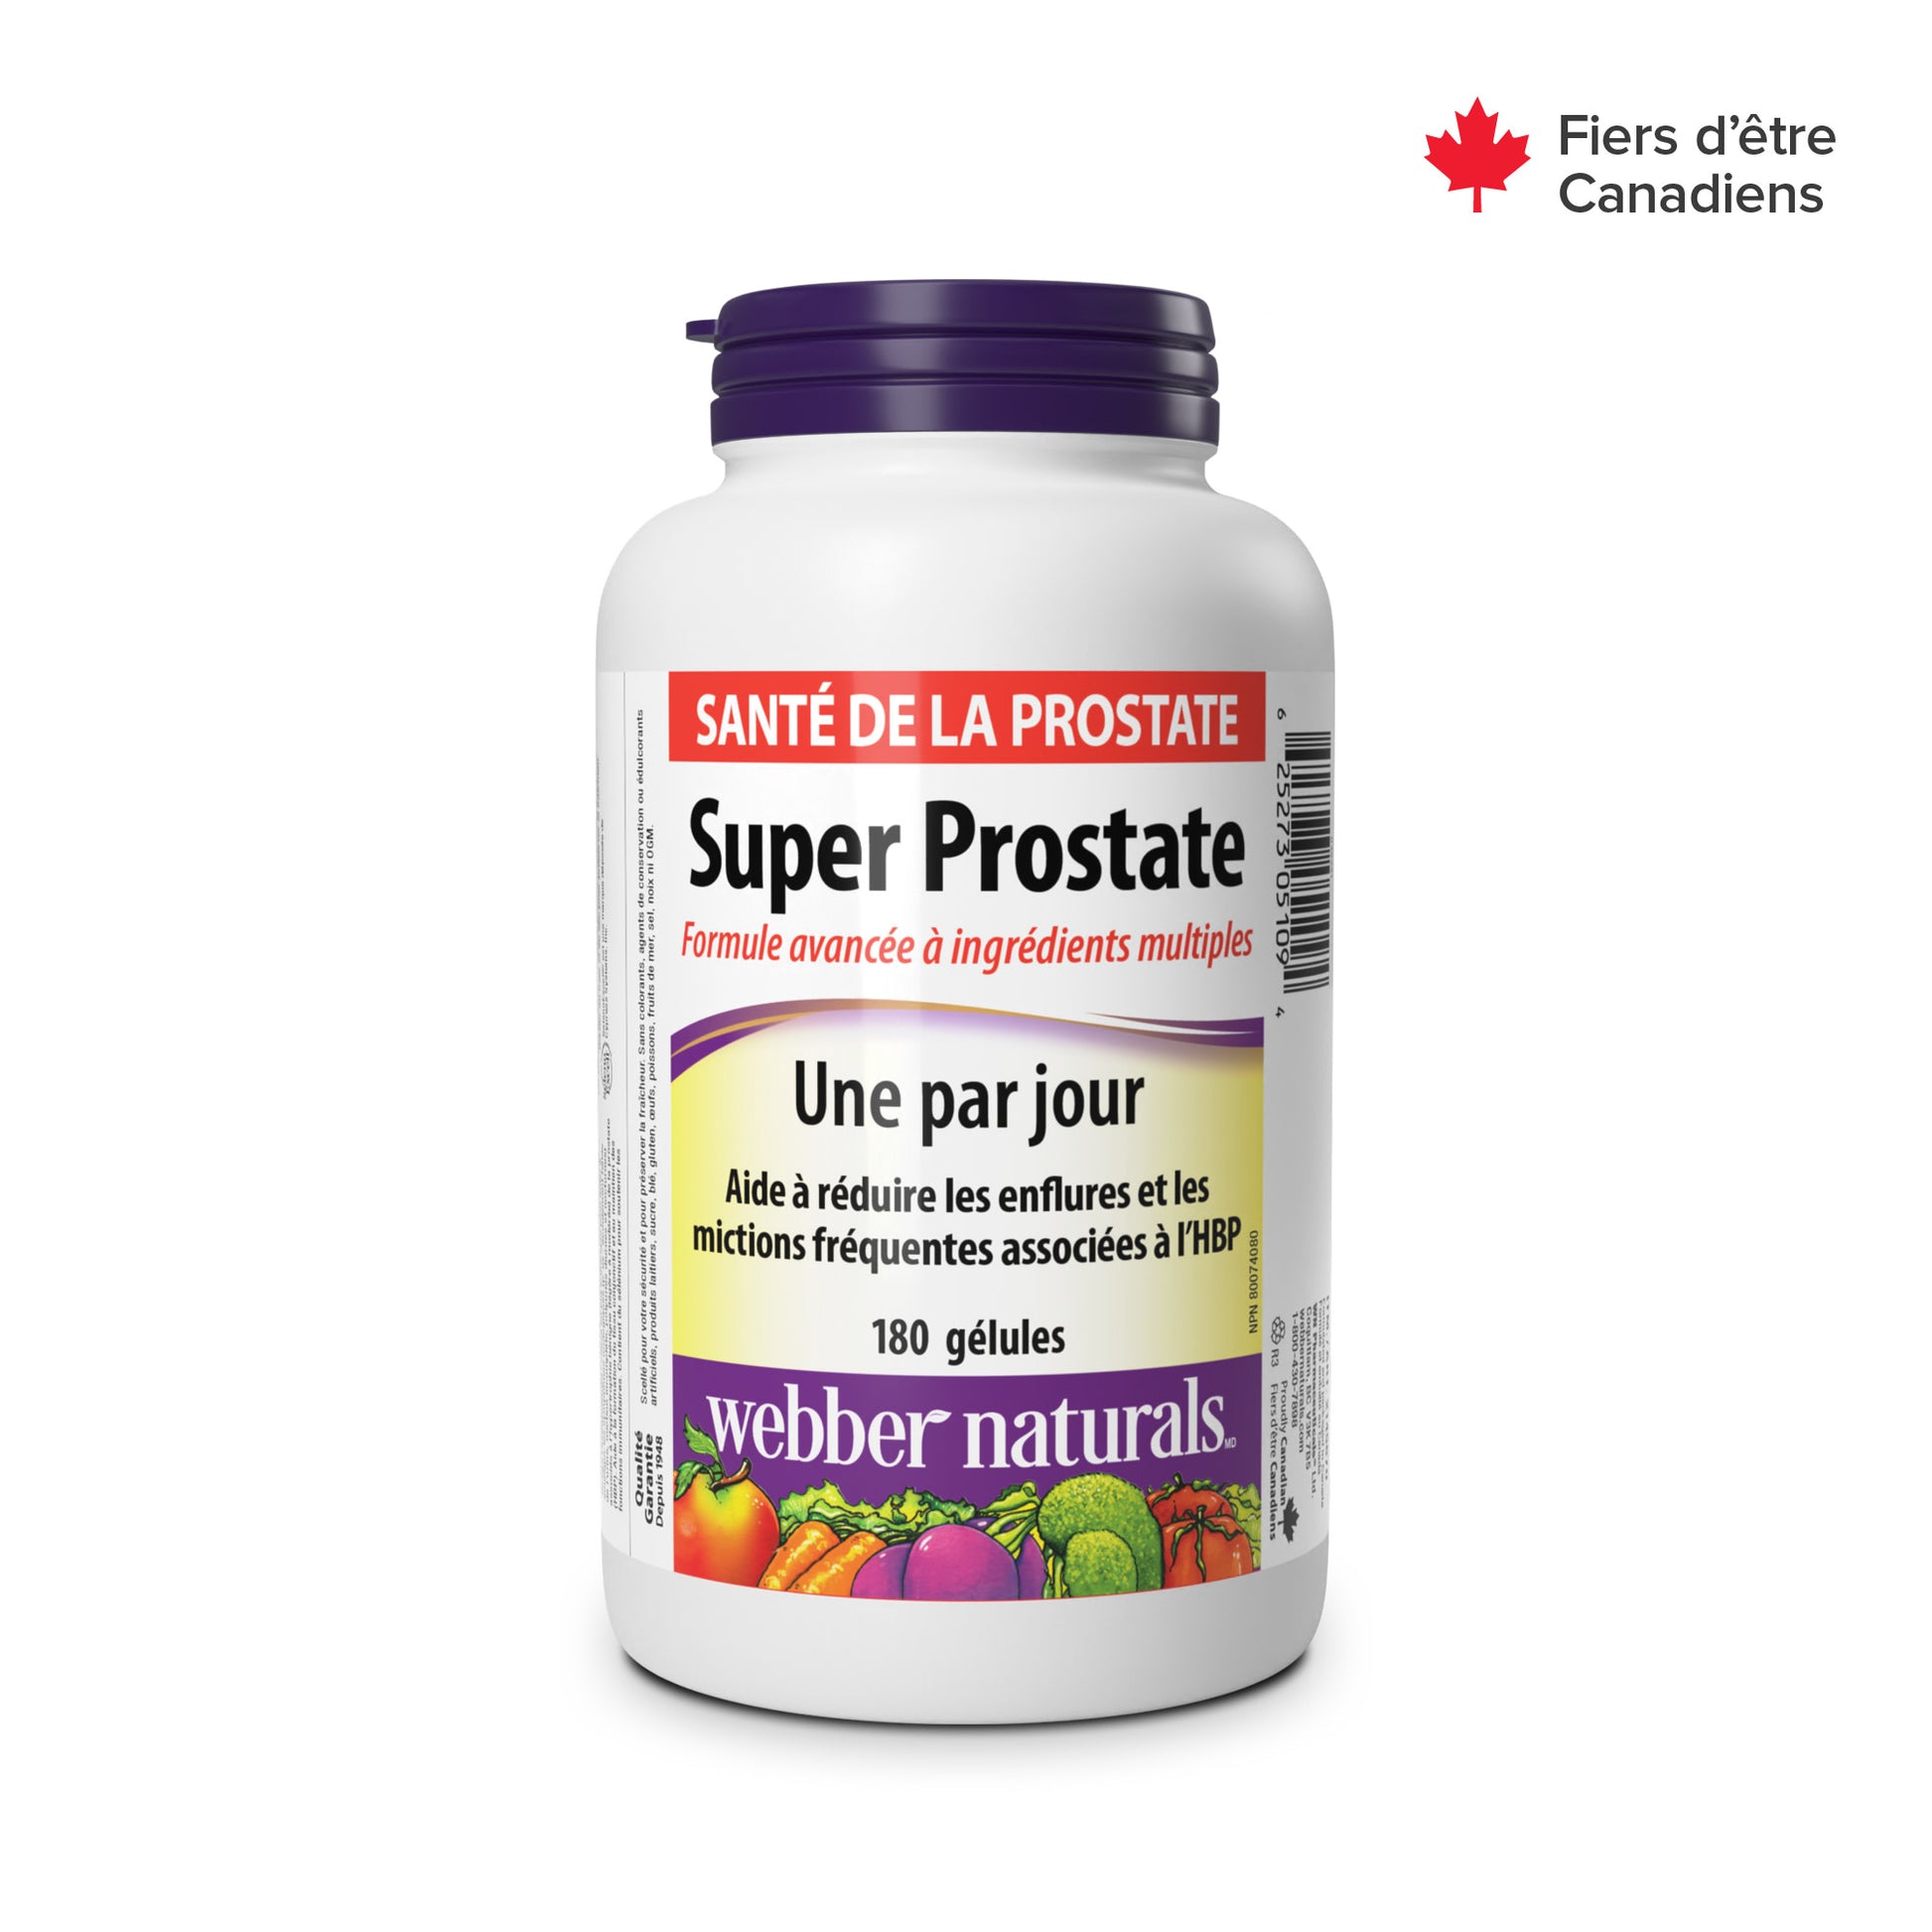 Super Prostate Advanced Multi Ingredient Formula  Softgels for Webber Naturals|v|hi-res|WN5109